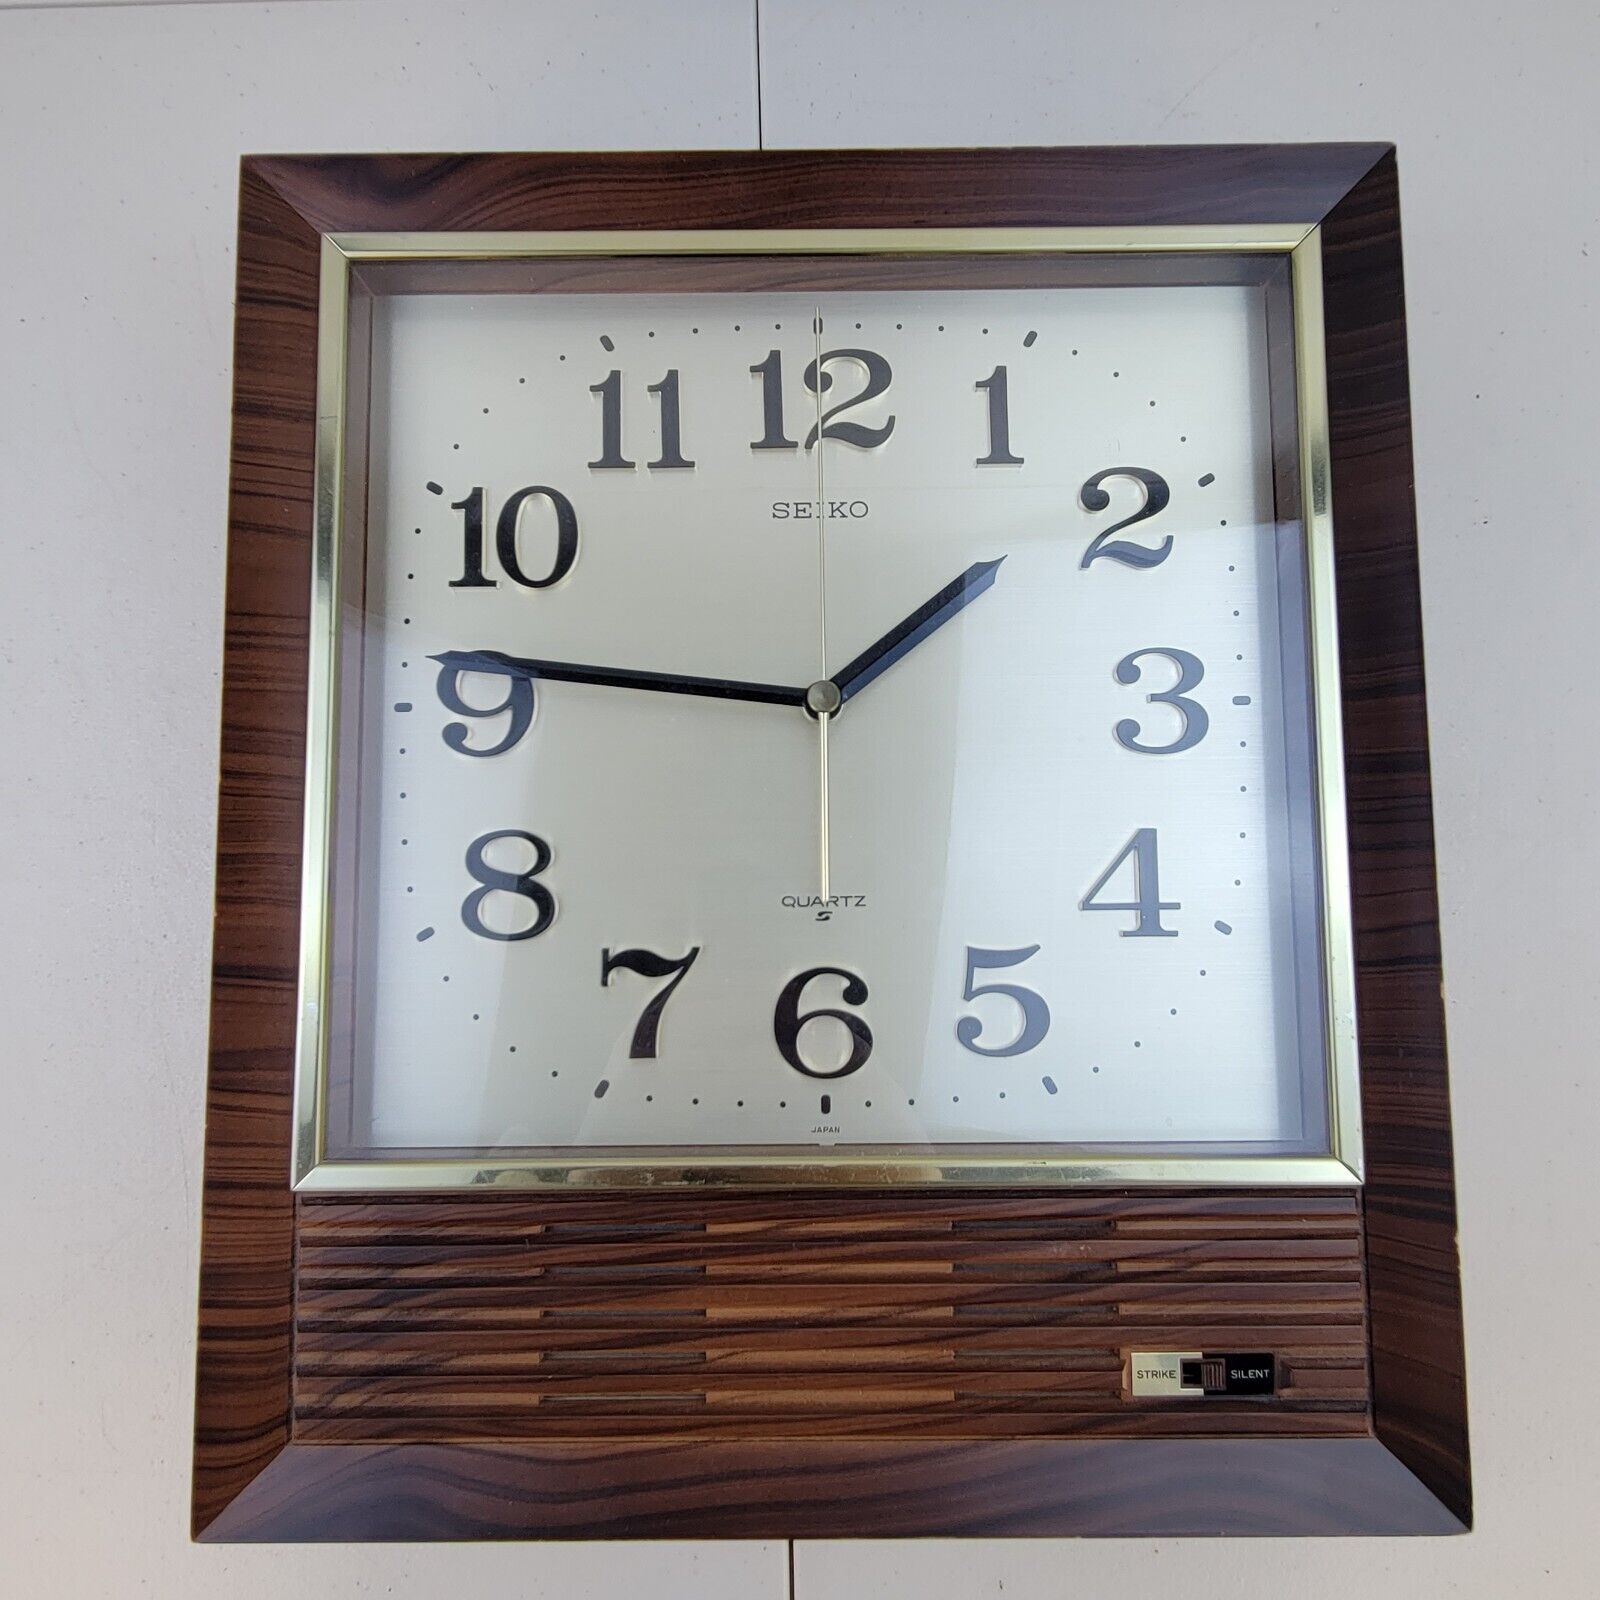 SEIKO Large Retro Quartz Wood Grain Striking Wall Clock with Chime QB508B